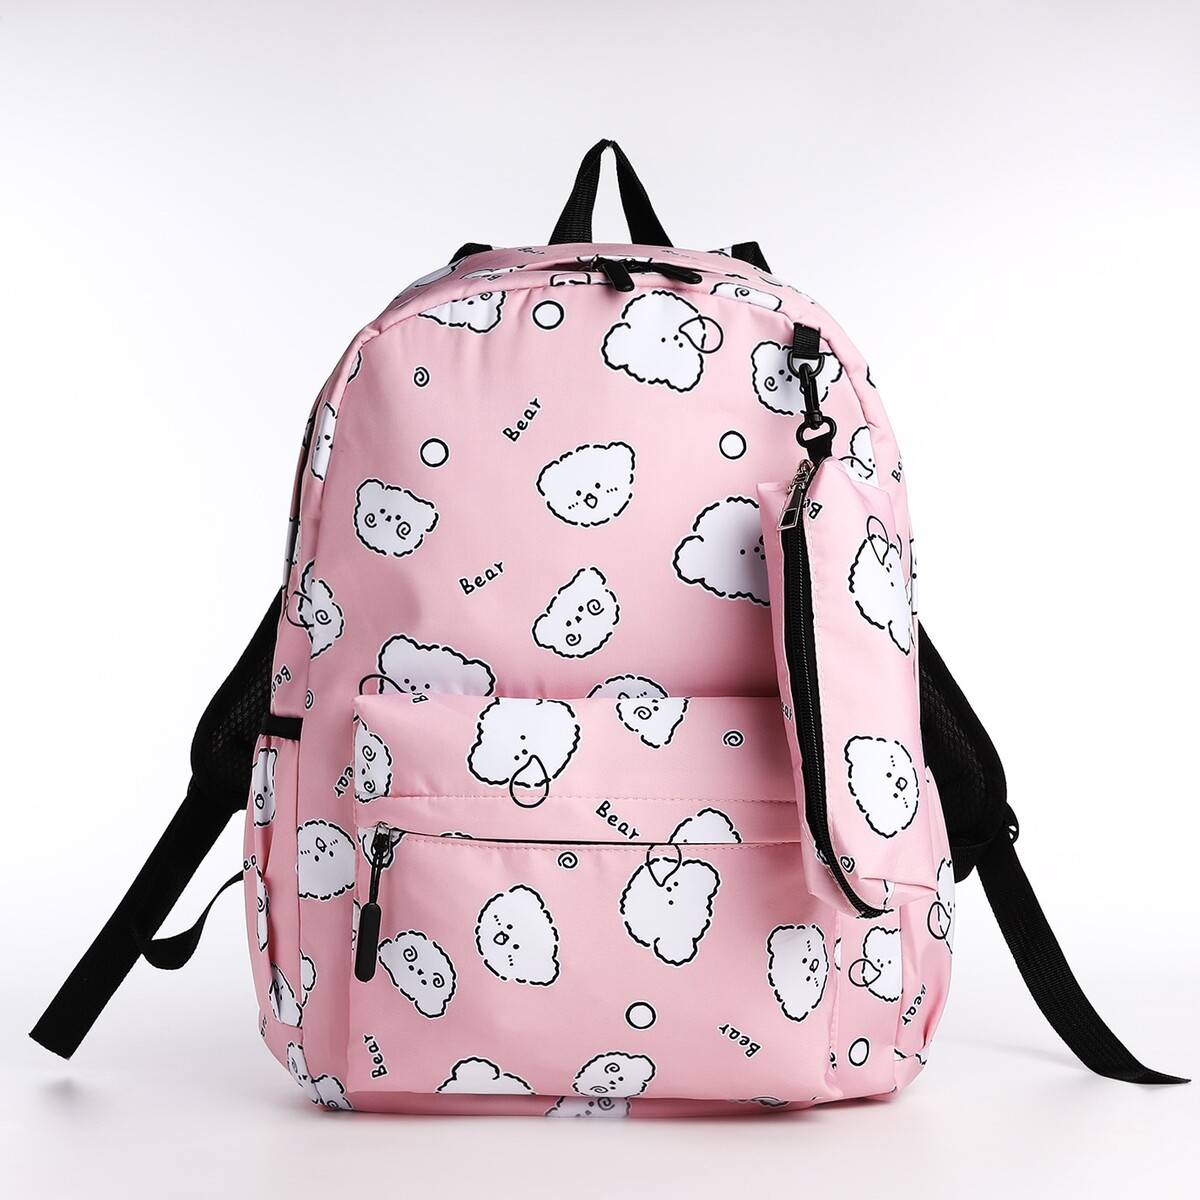 Рюкзак школьный из текстиля на молнии, 3 кармана, пенал, цвет розовый